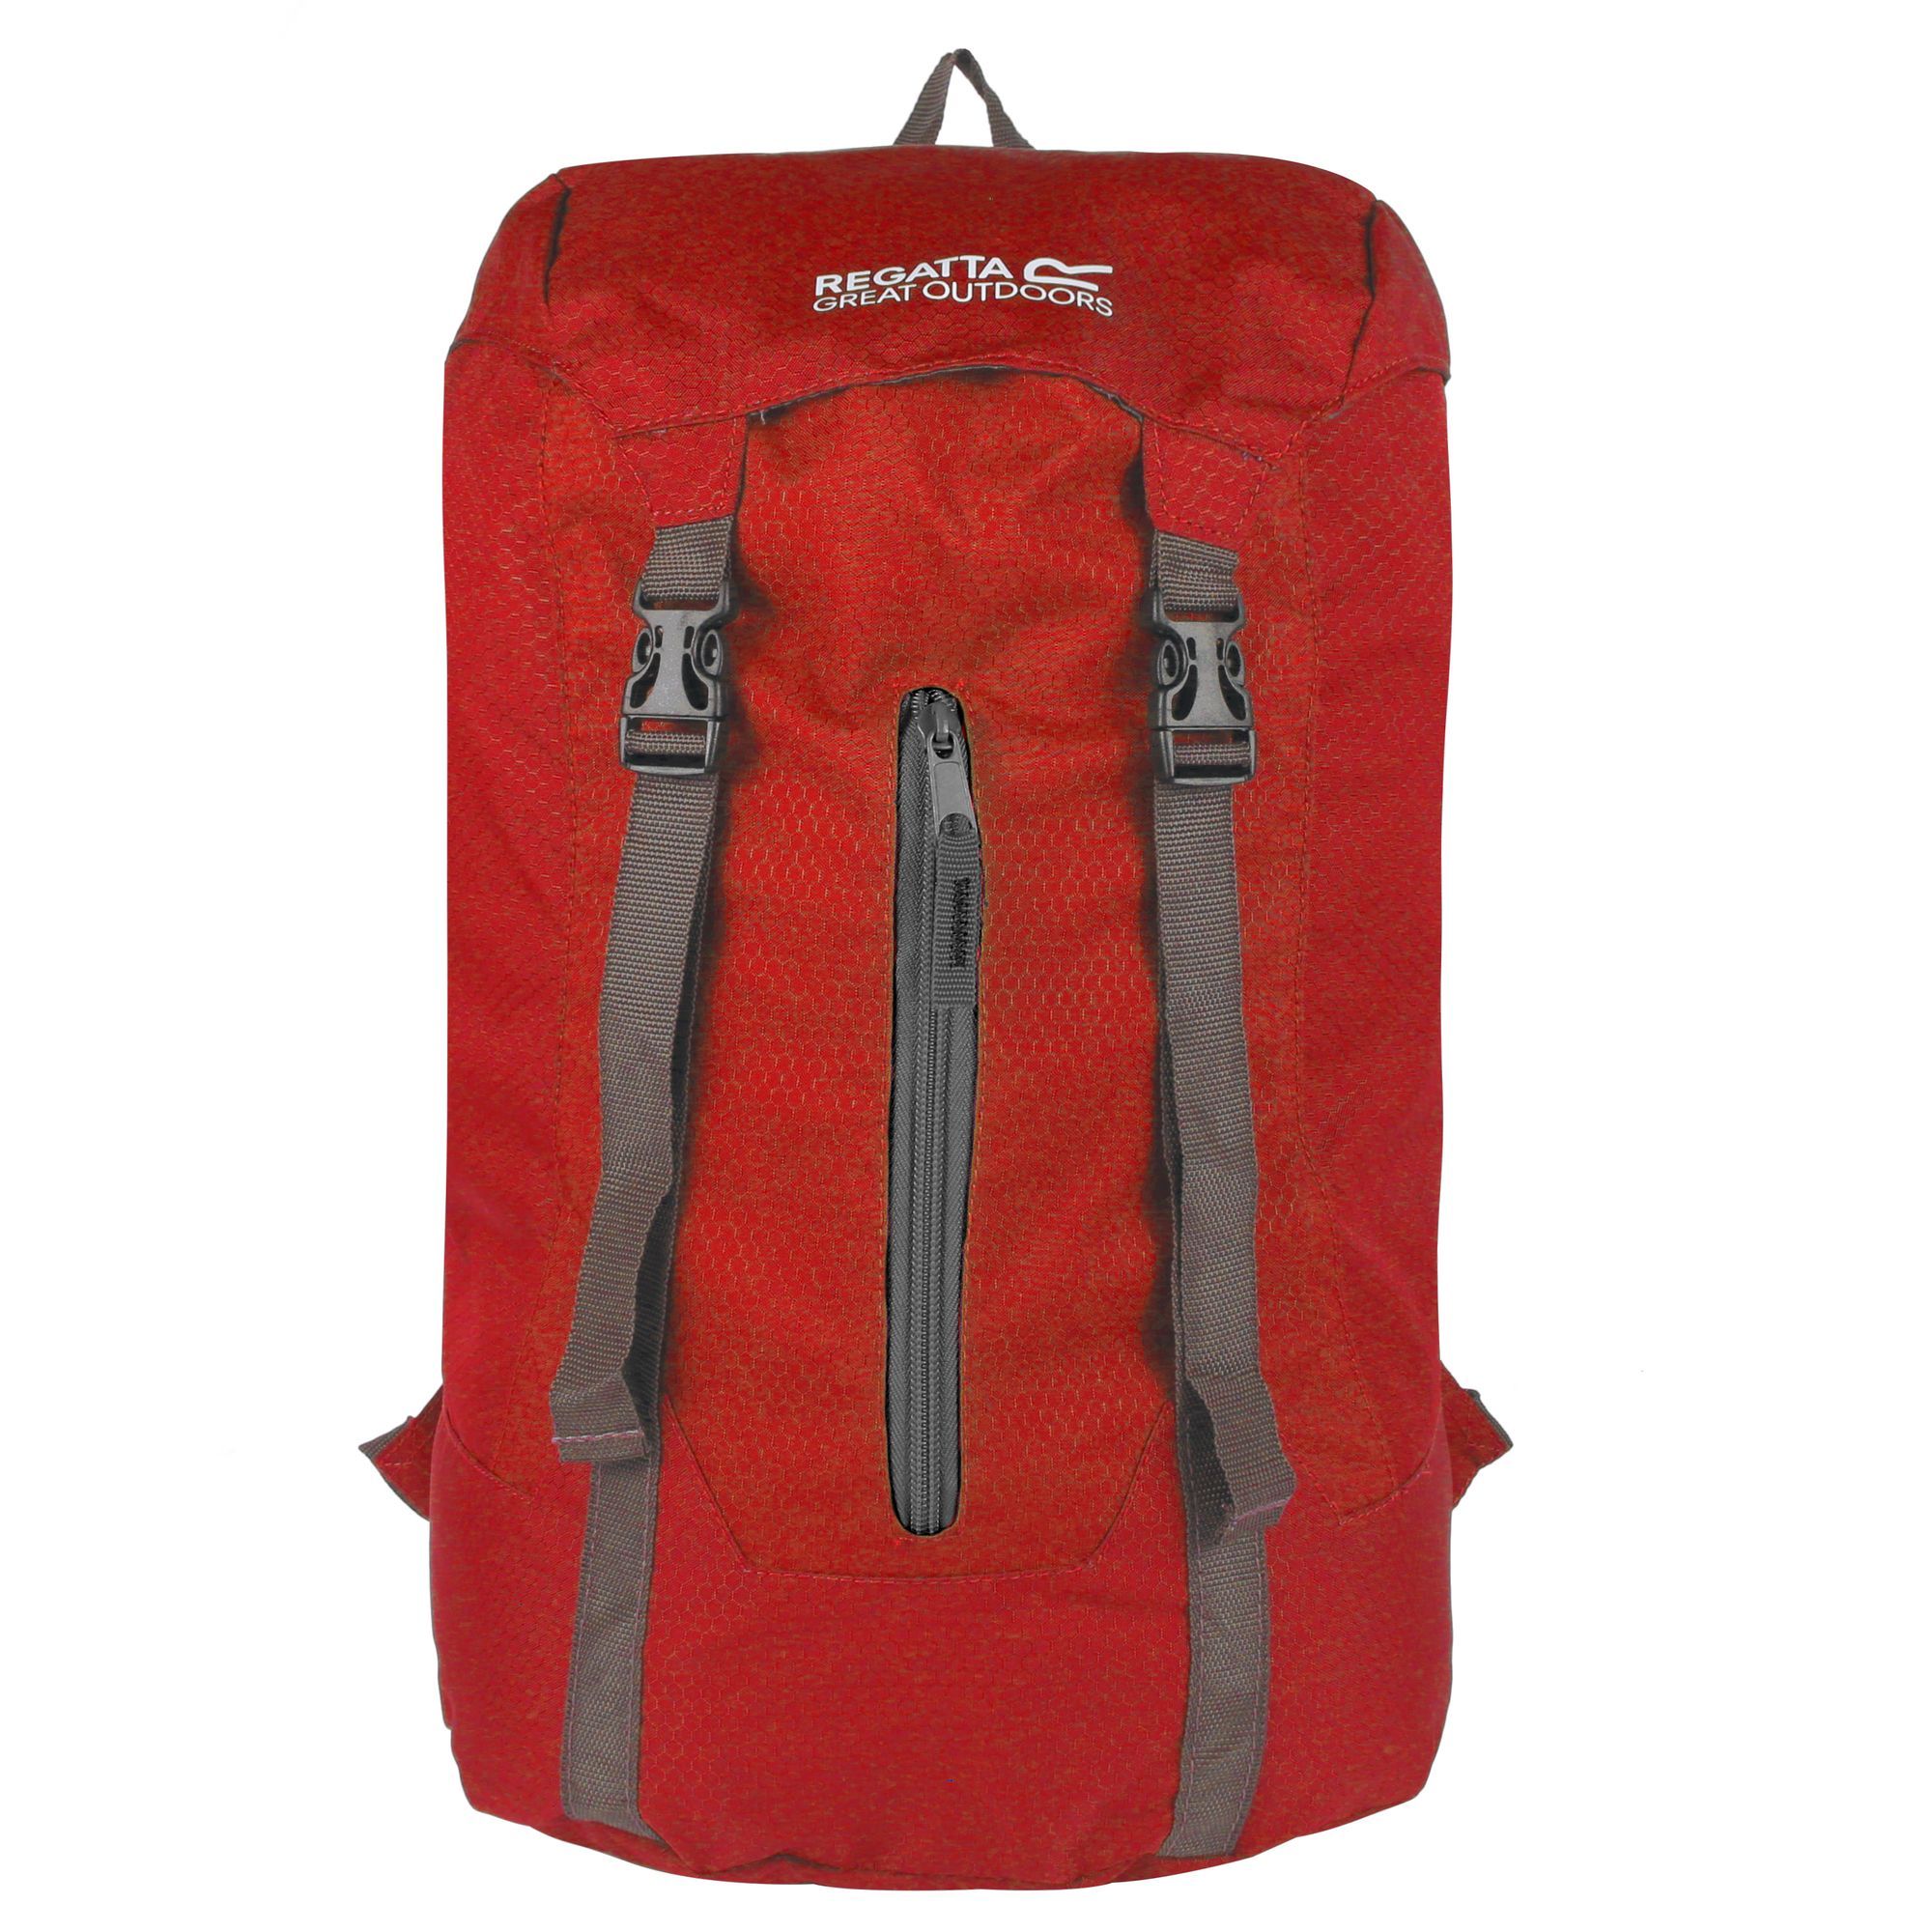 Great Outdoors Easypack Packaway Rucksack/backpack (25 Litros) Regatta Easypack Ii - rojo - 